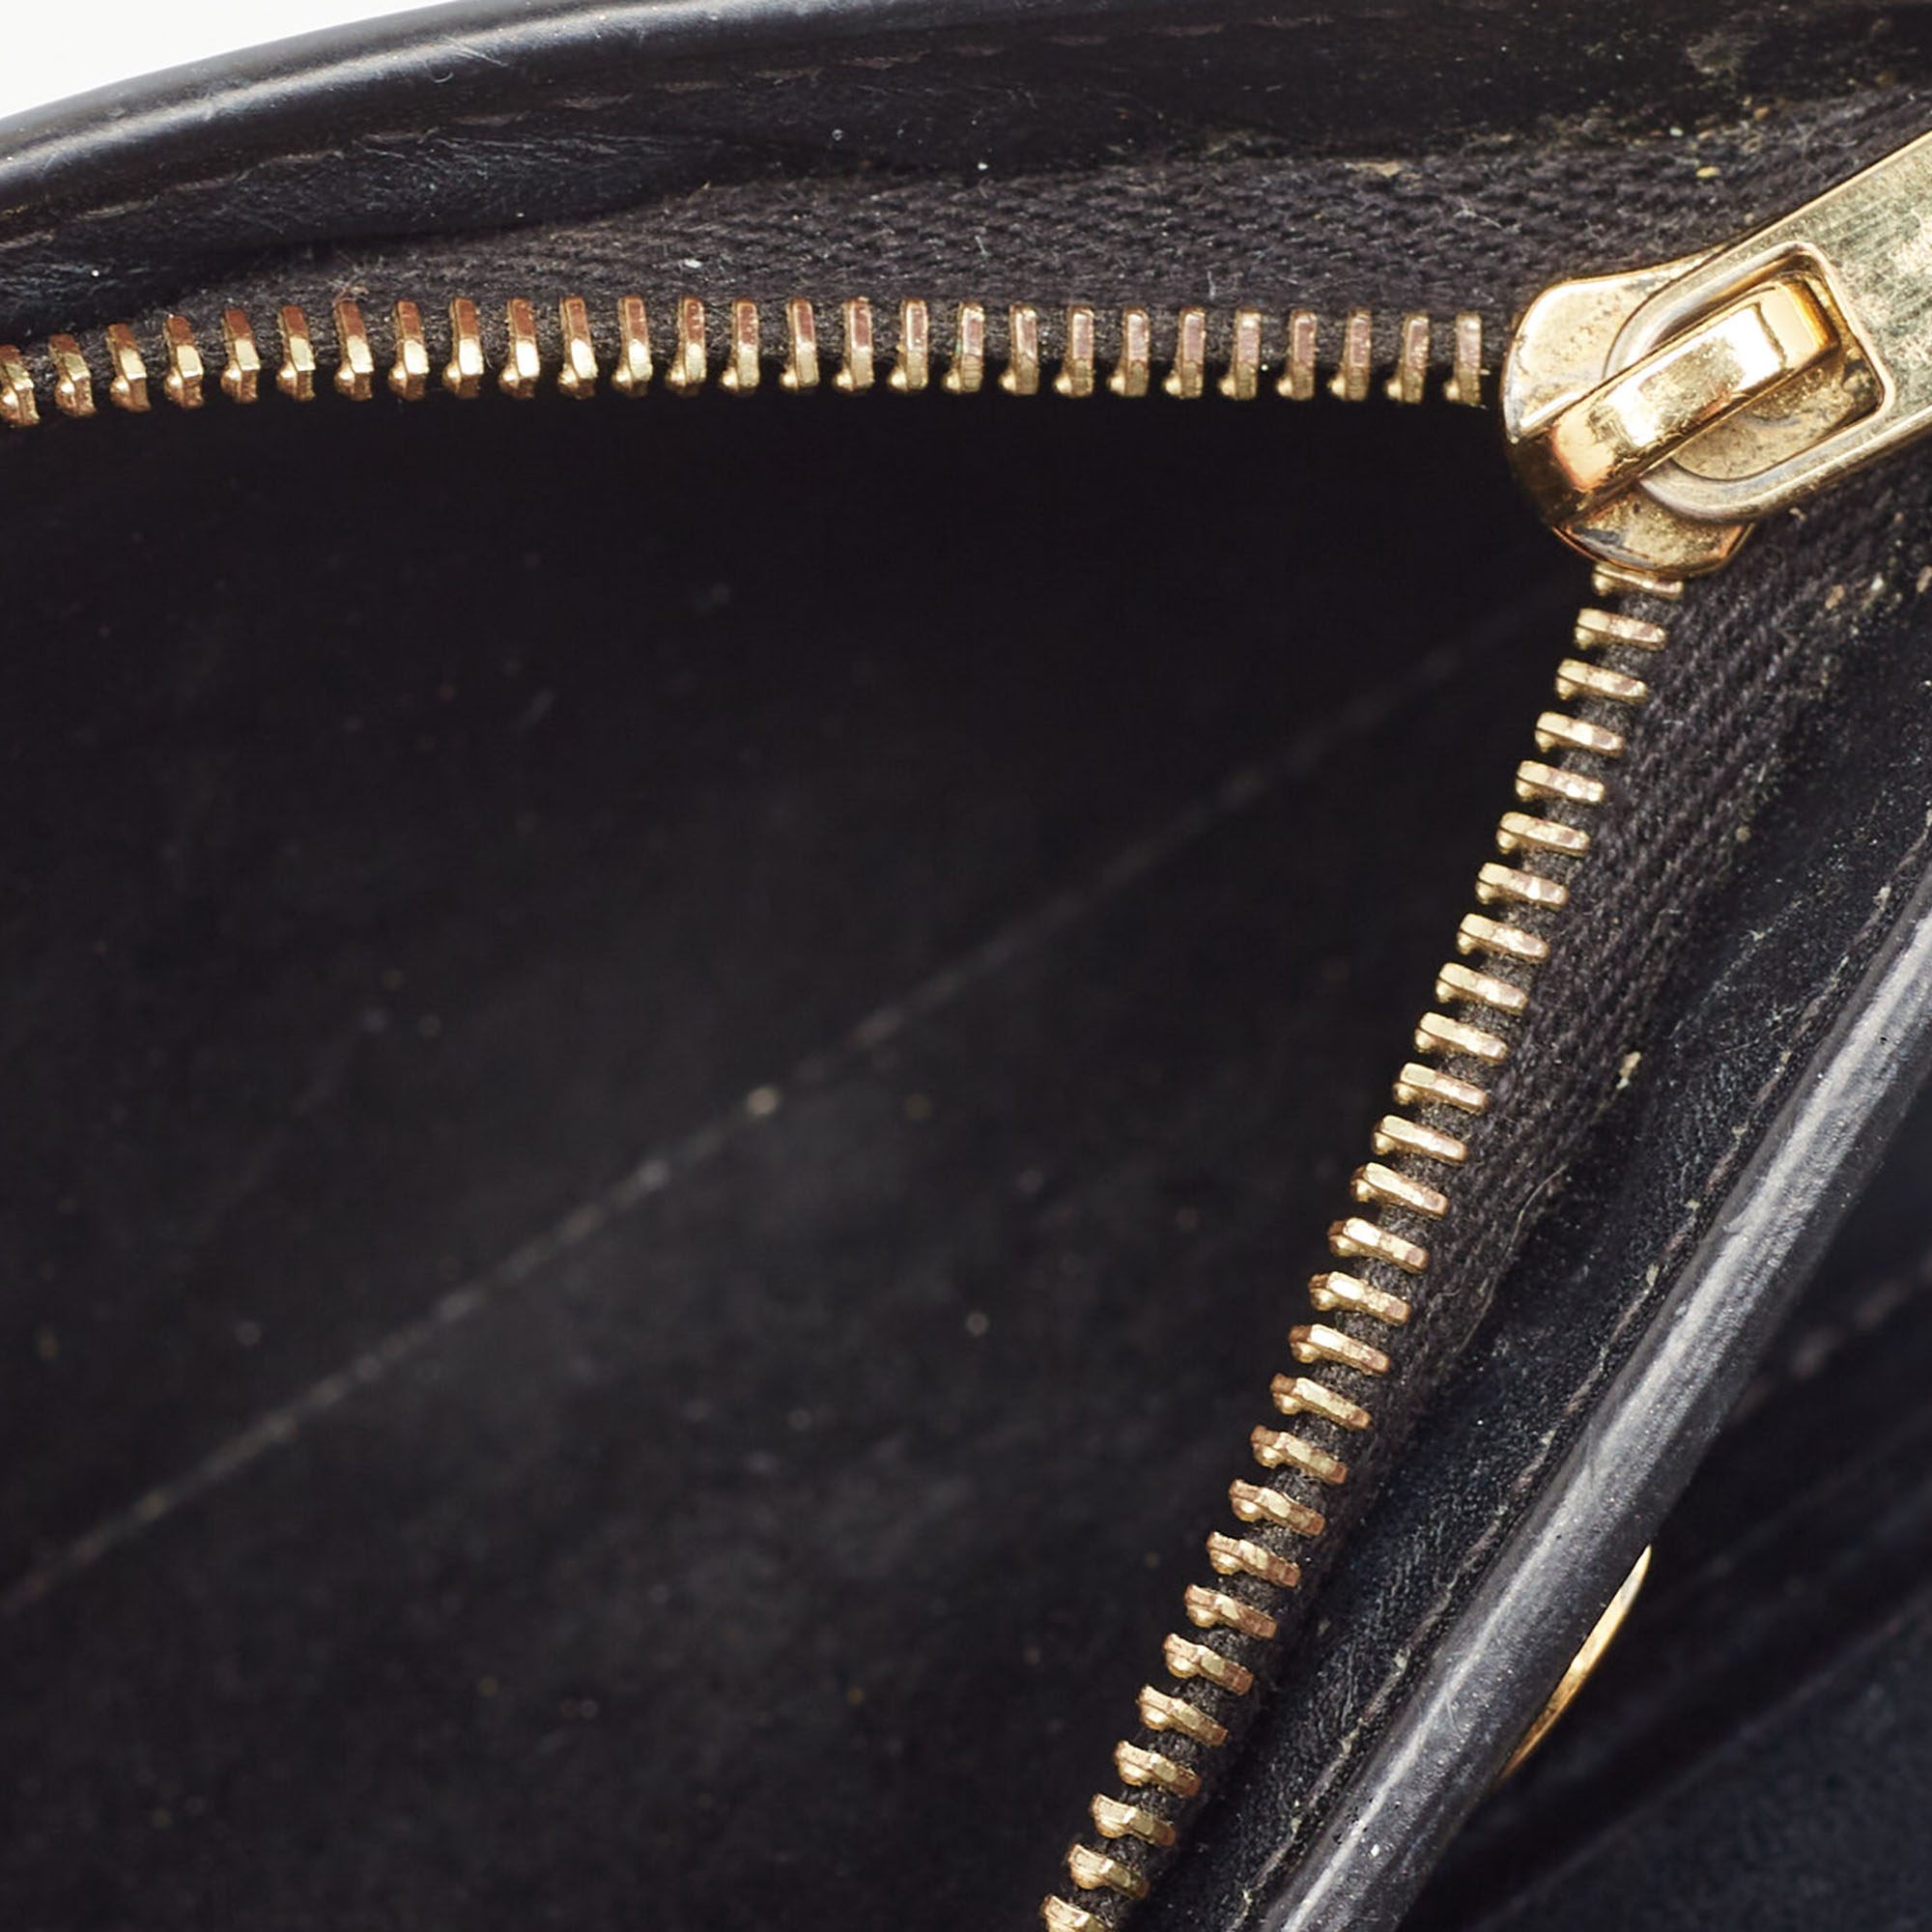 Celine Black Leather Zip Bifold Compact Wallet